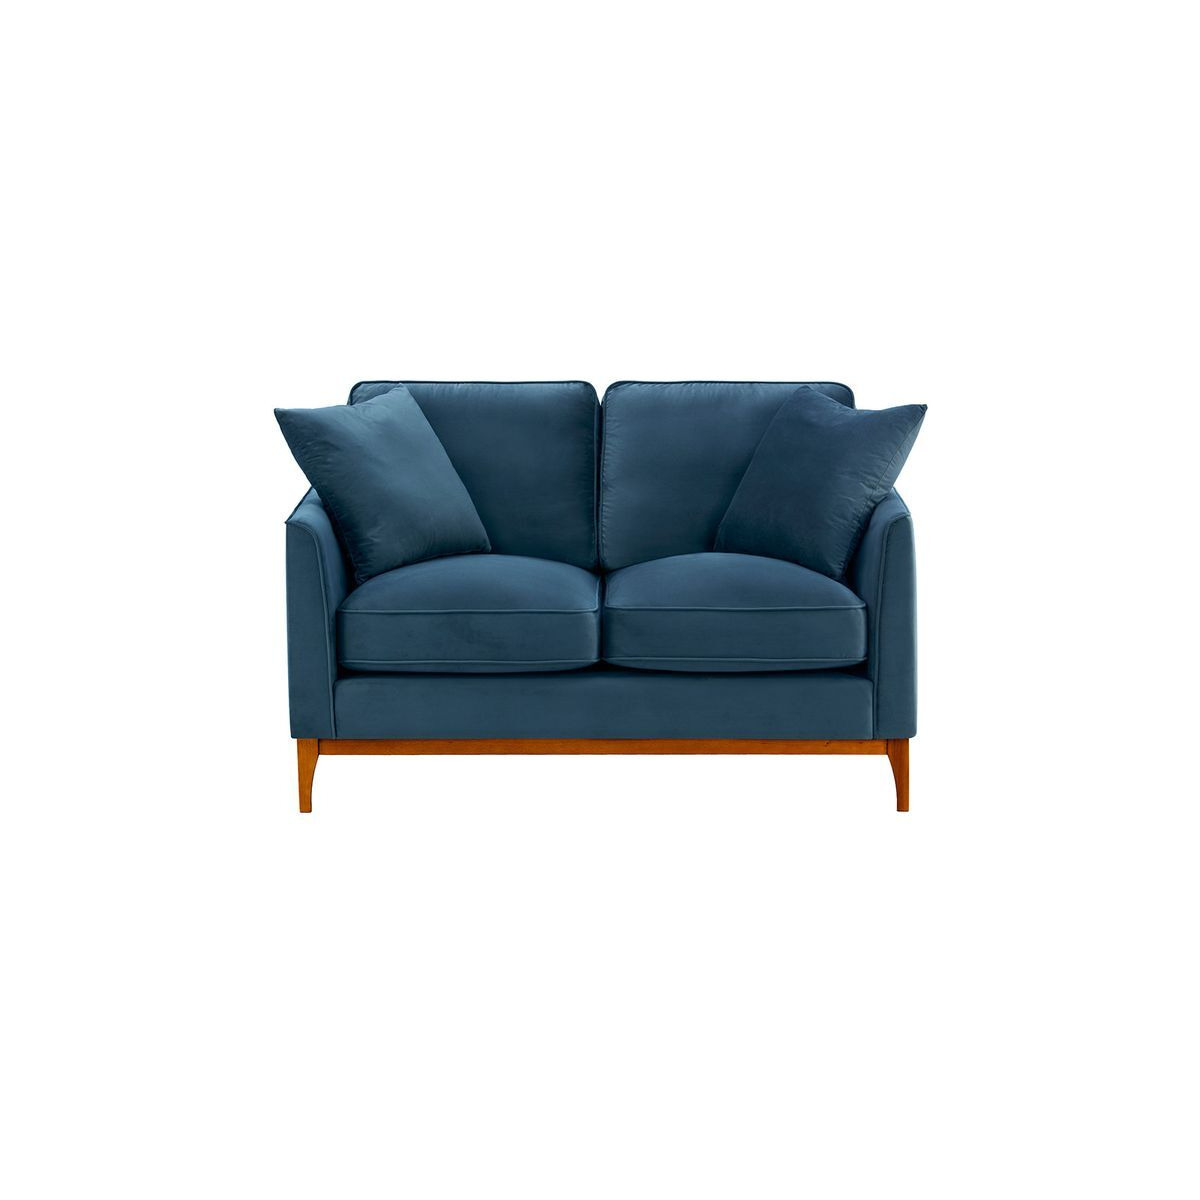 Linara 2 Seater Sofa, blue, Leg colour: aveo - image 1